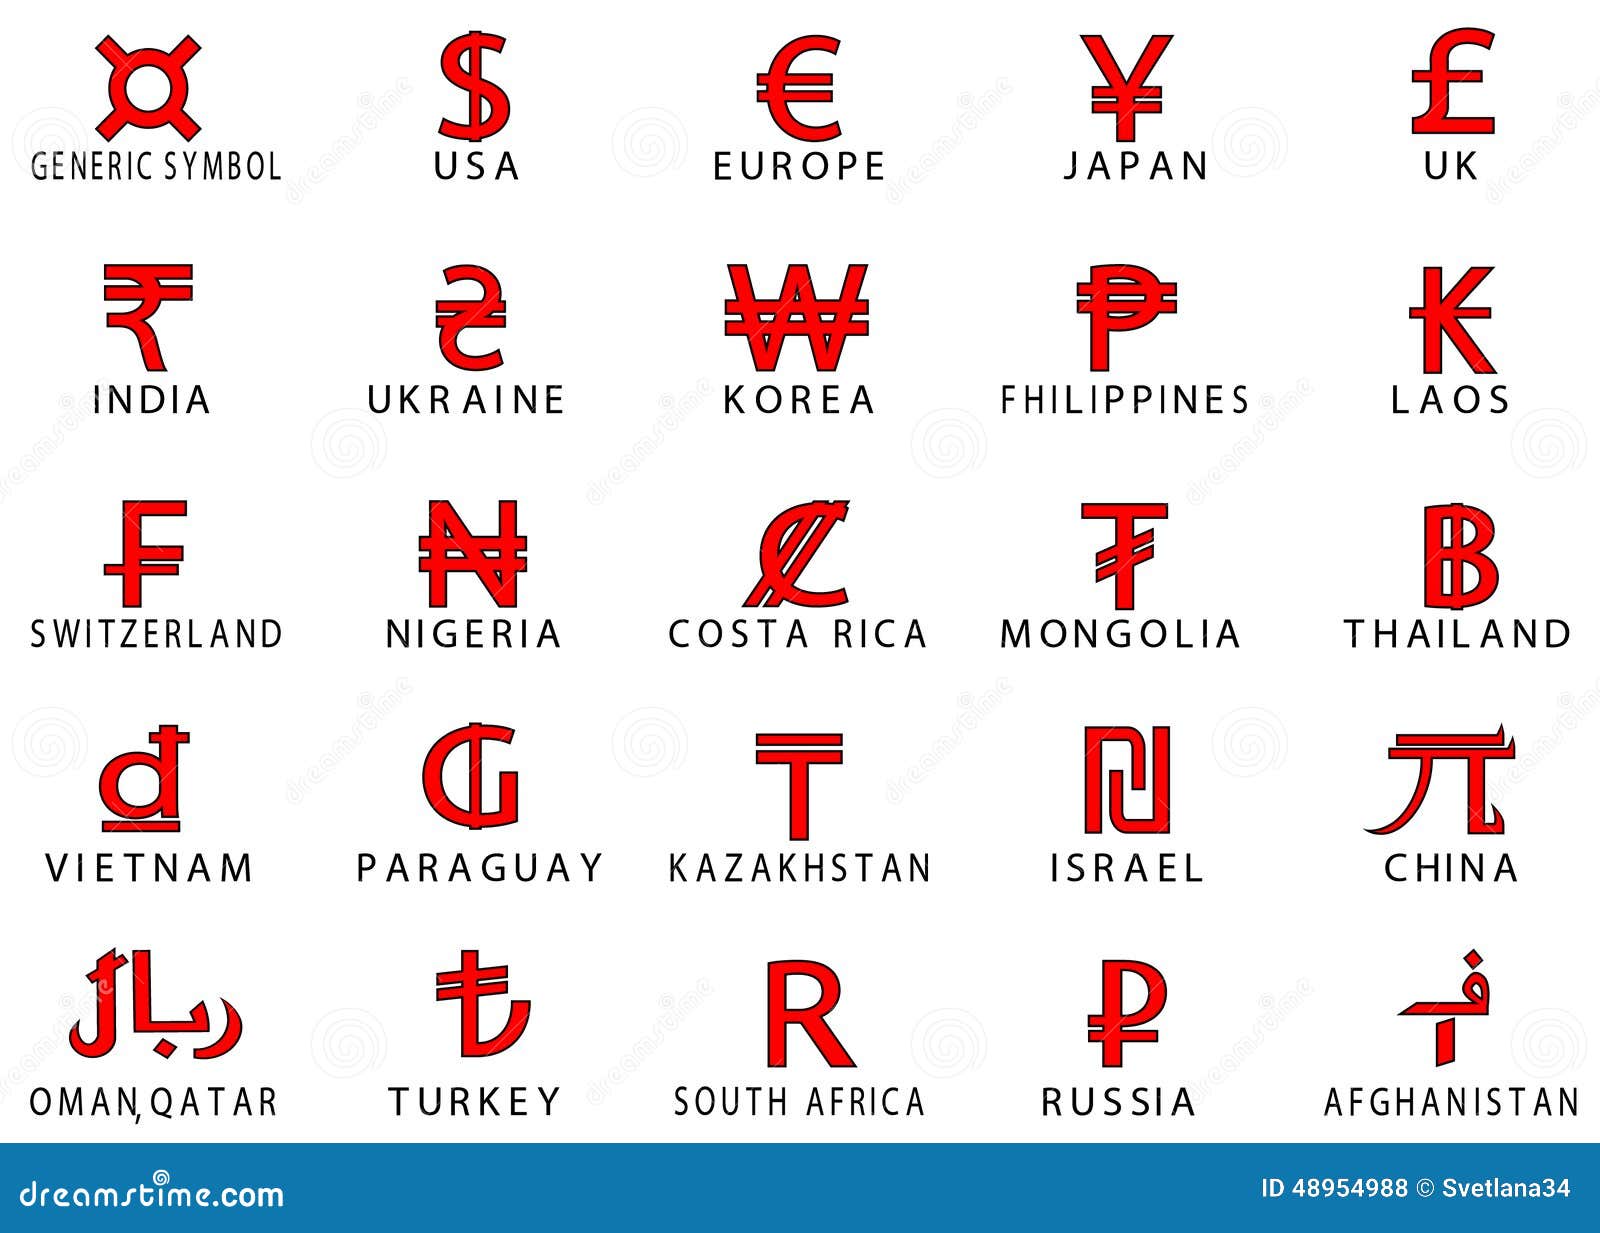 Денежный знак таблица. Обозначение валют знаками Мировых. Знаки денежных валют разных стран. Обозначение денежных знаков разных стран. Валюта обозначение значками.